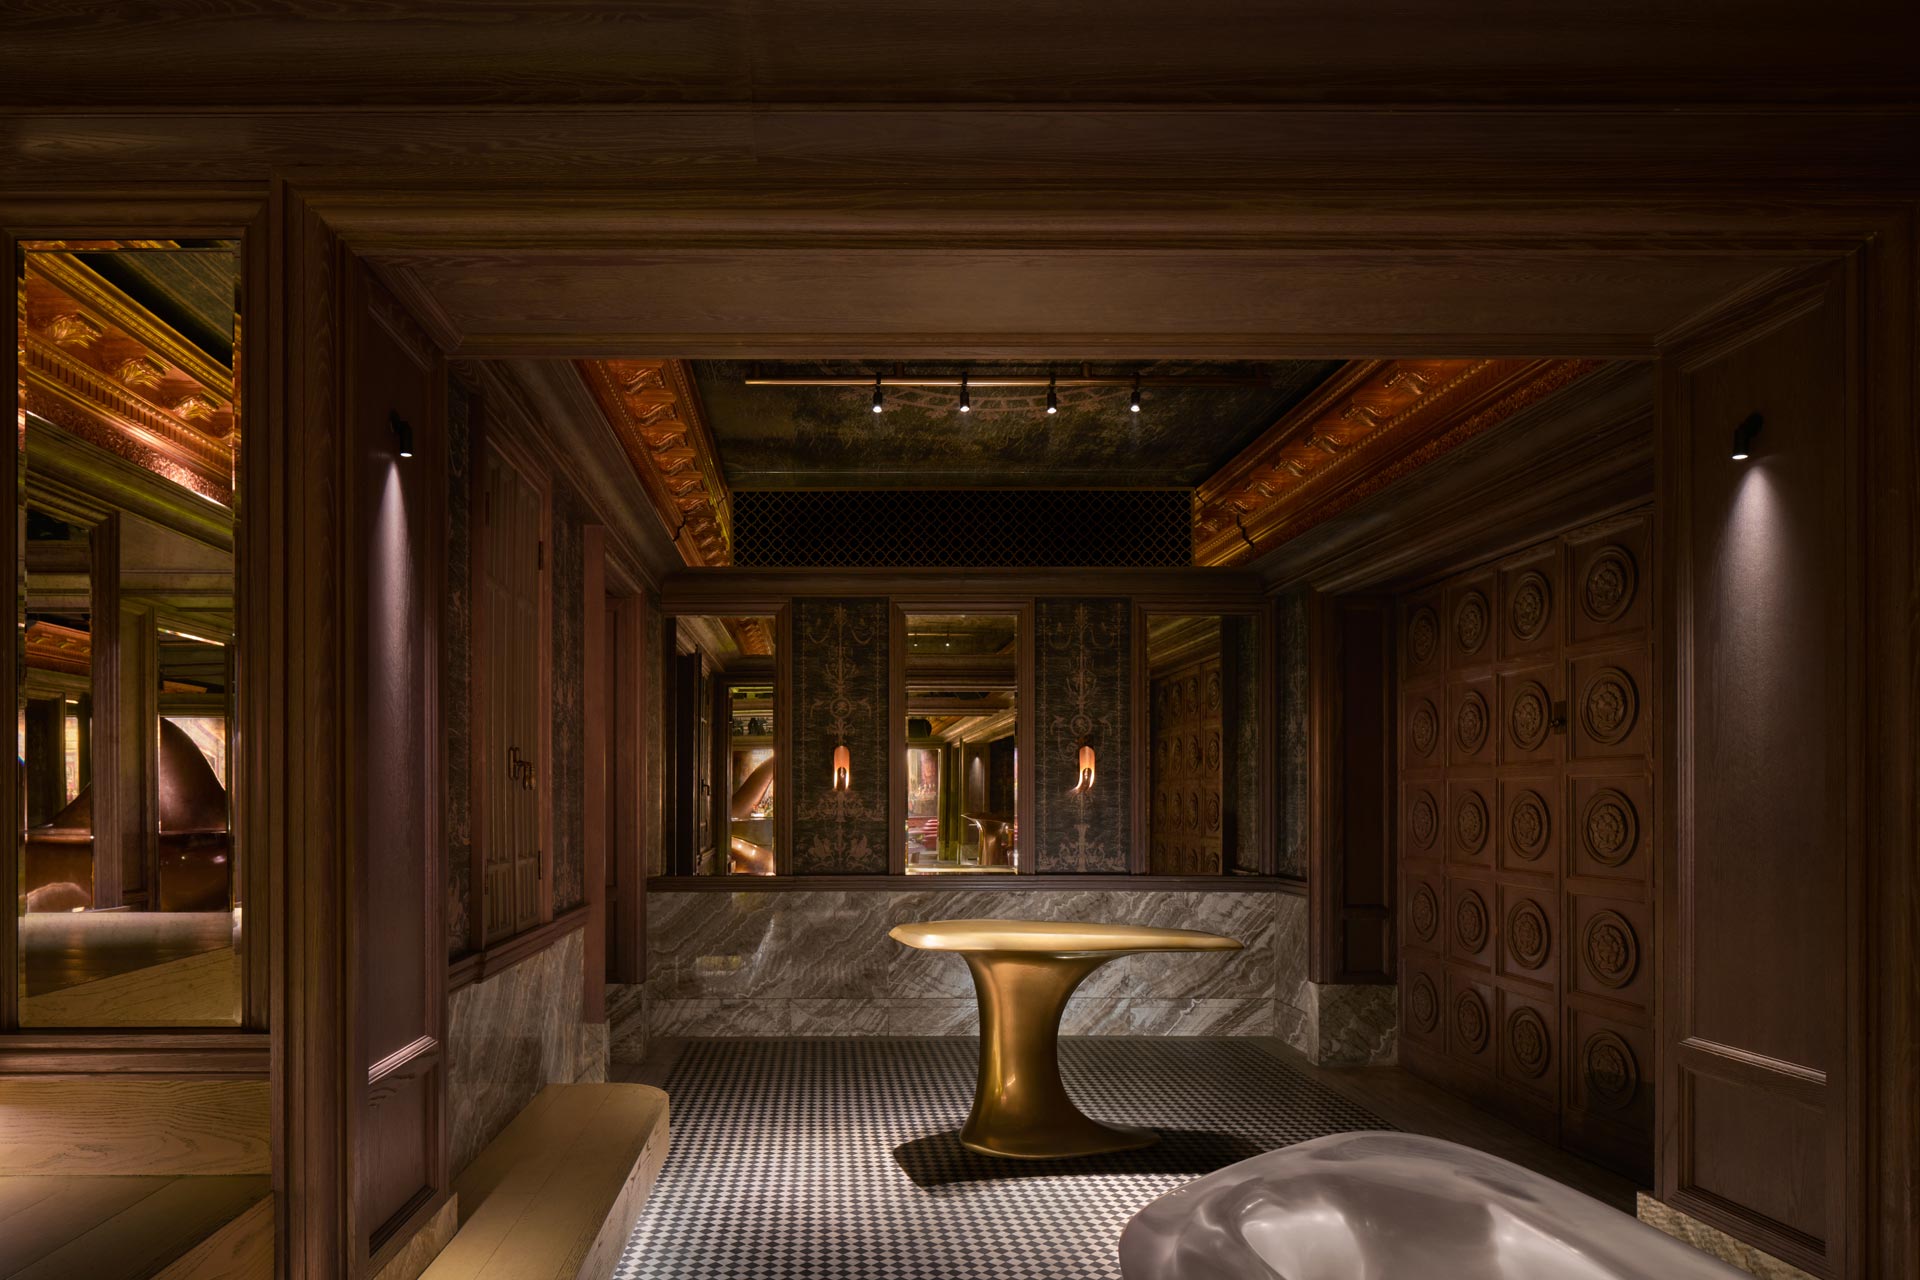 The Secret Room by Paolo Ferrari at Five Palm Jumeirah, Dubai